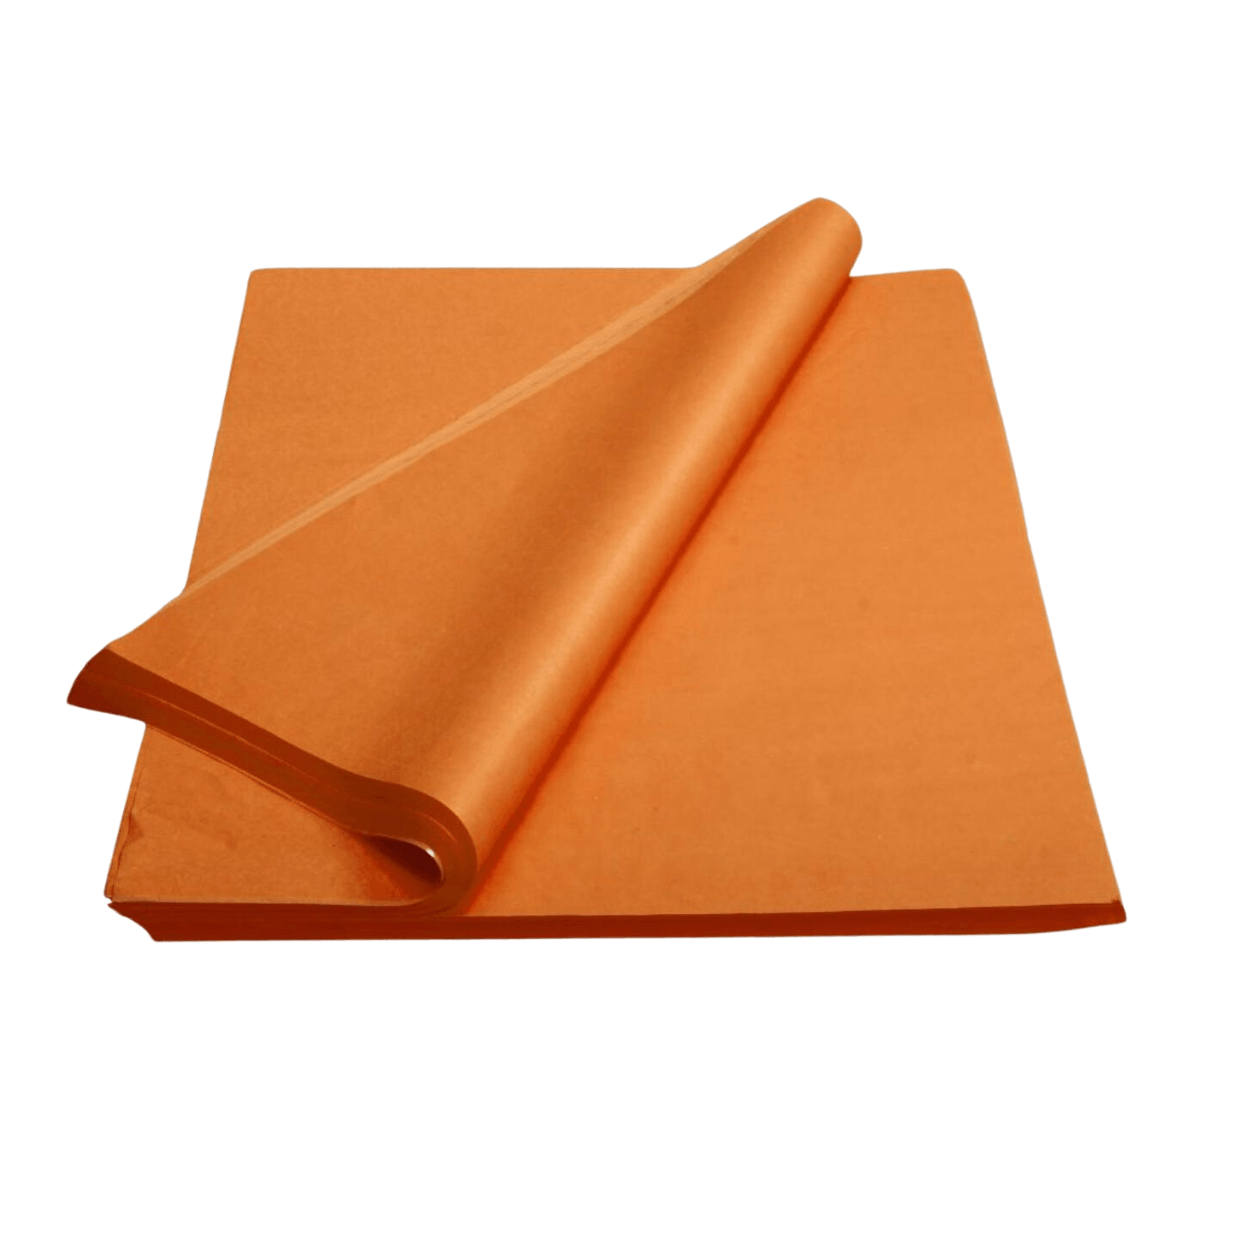 Orange Tissue Paper in Bulk - 15x20 inch - 480 Sheets